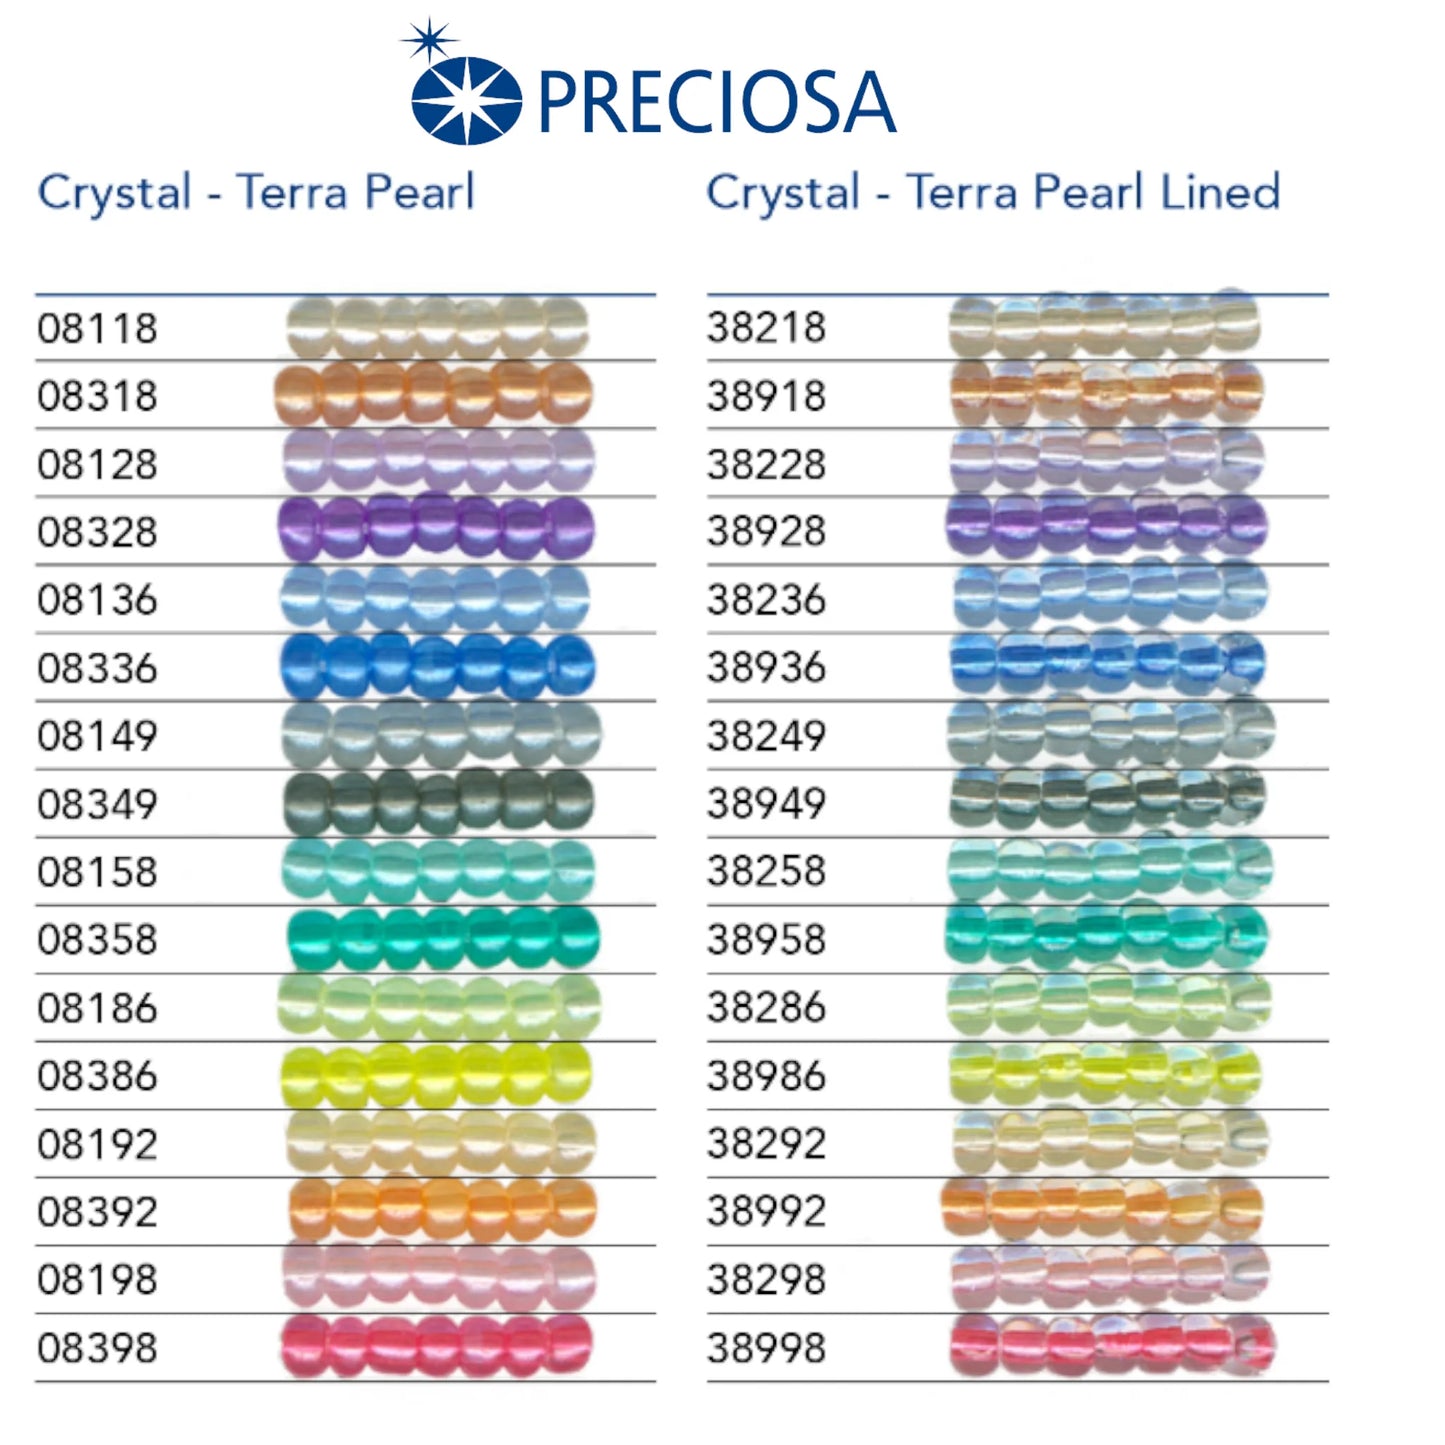 08349 Rocailles tchèques PRECIOSA Rocailles 10/0 gris. Cristal - Terra Perle.